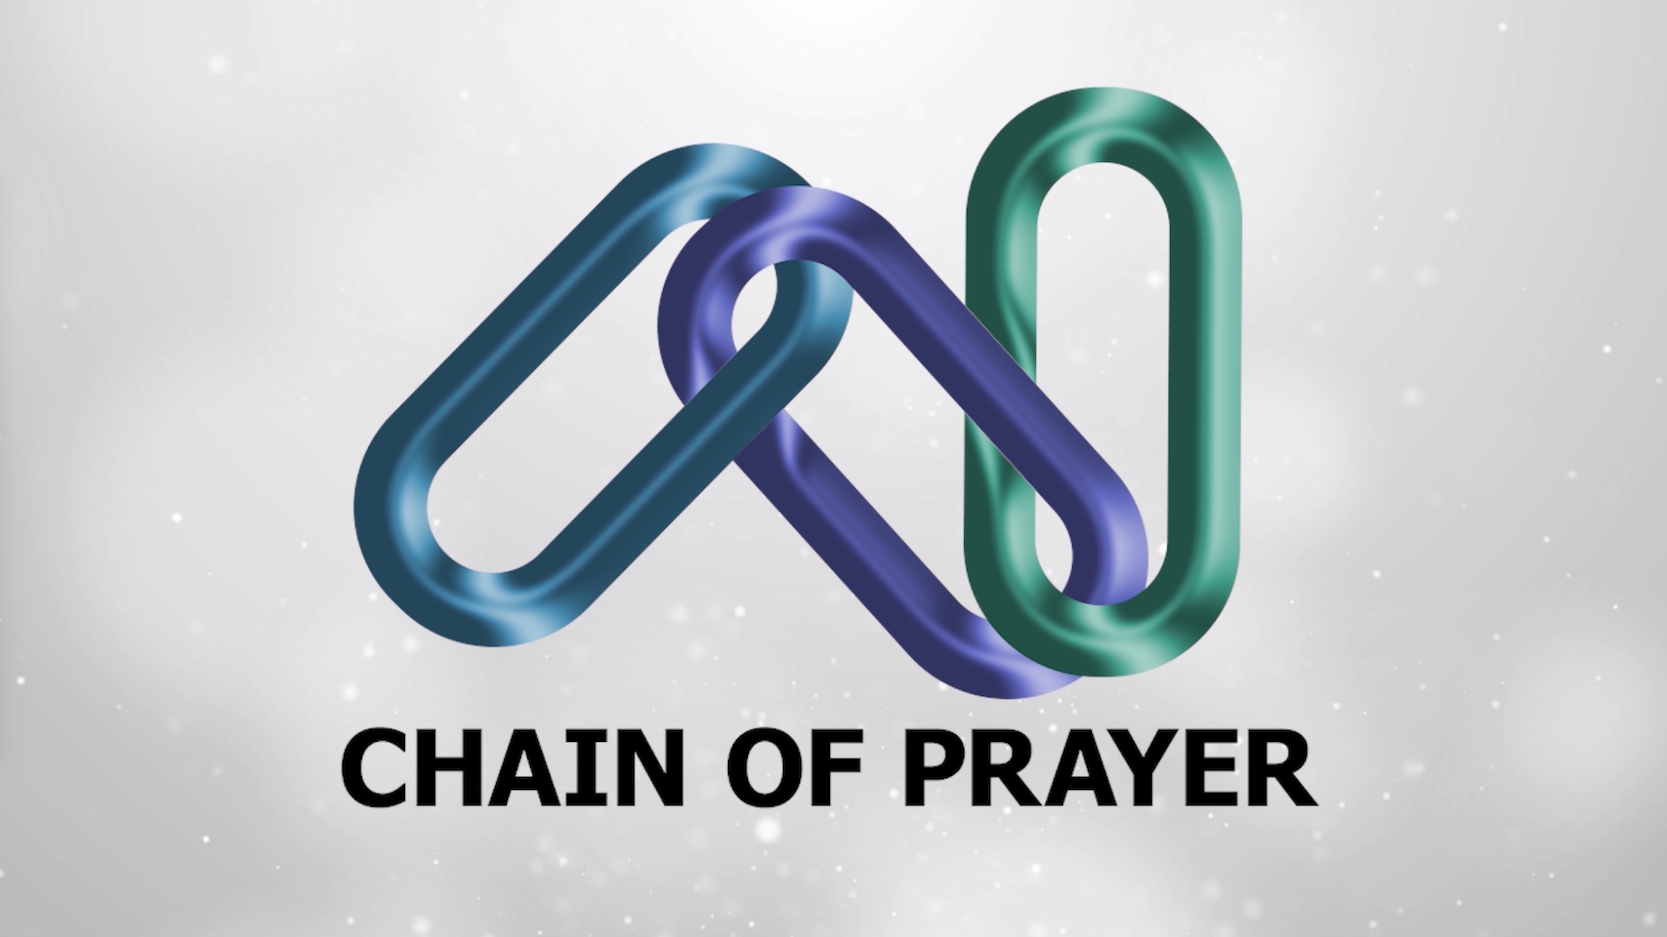 Chain of Prayer